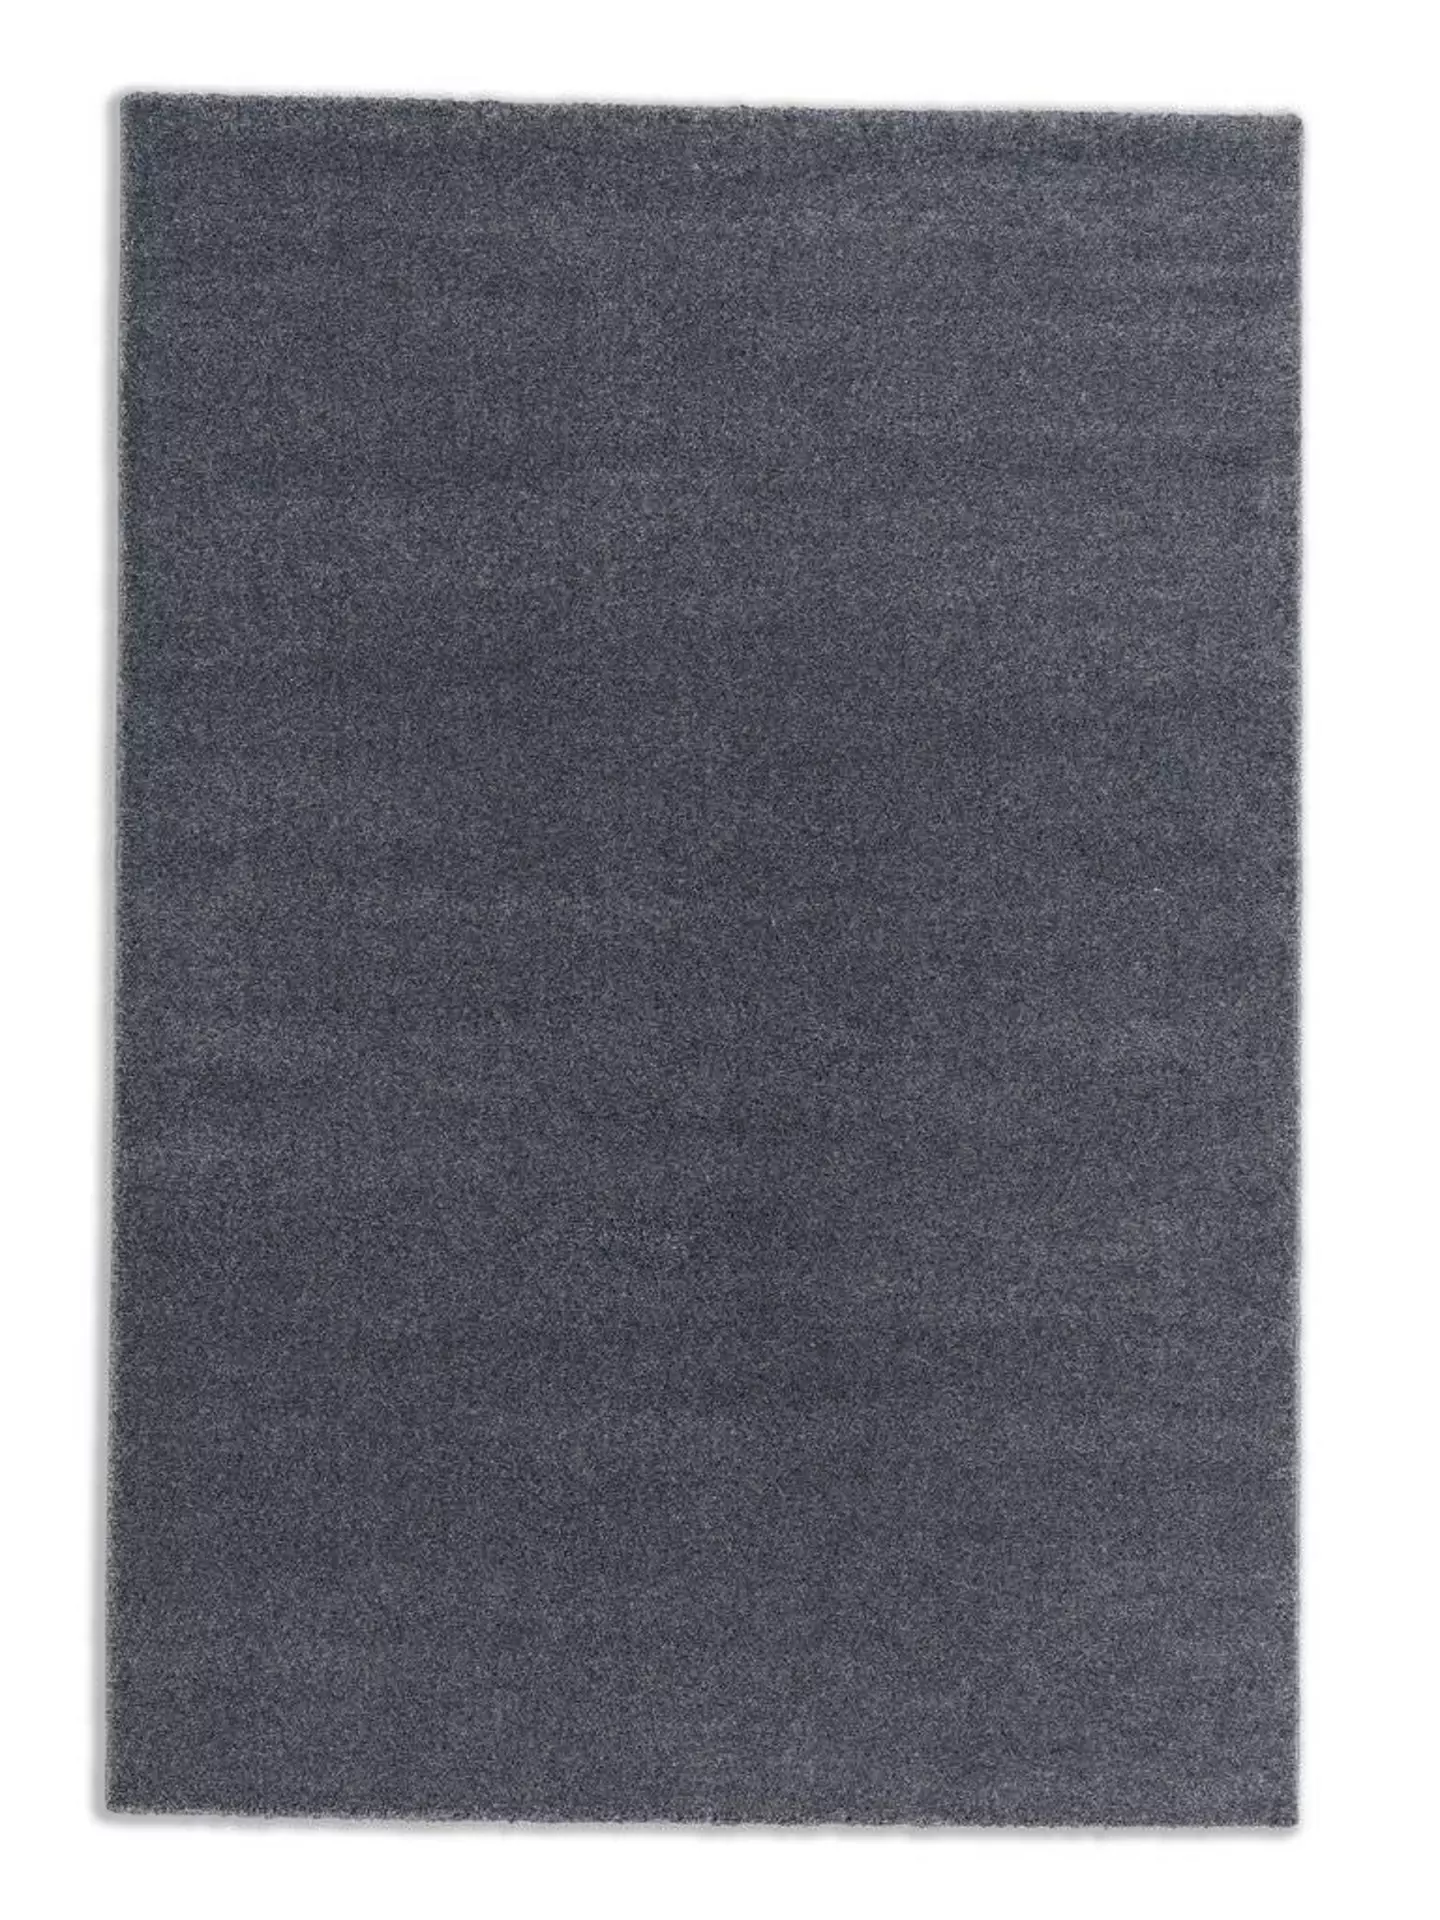 Maschinenwebteppich Pure SCHÖNER WOHNEN-Kollektion Textil 160 x 230 cm